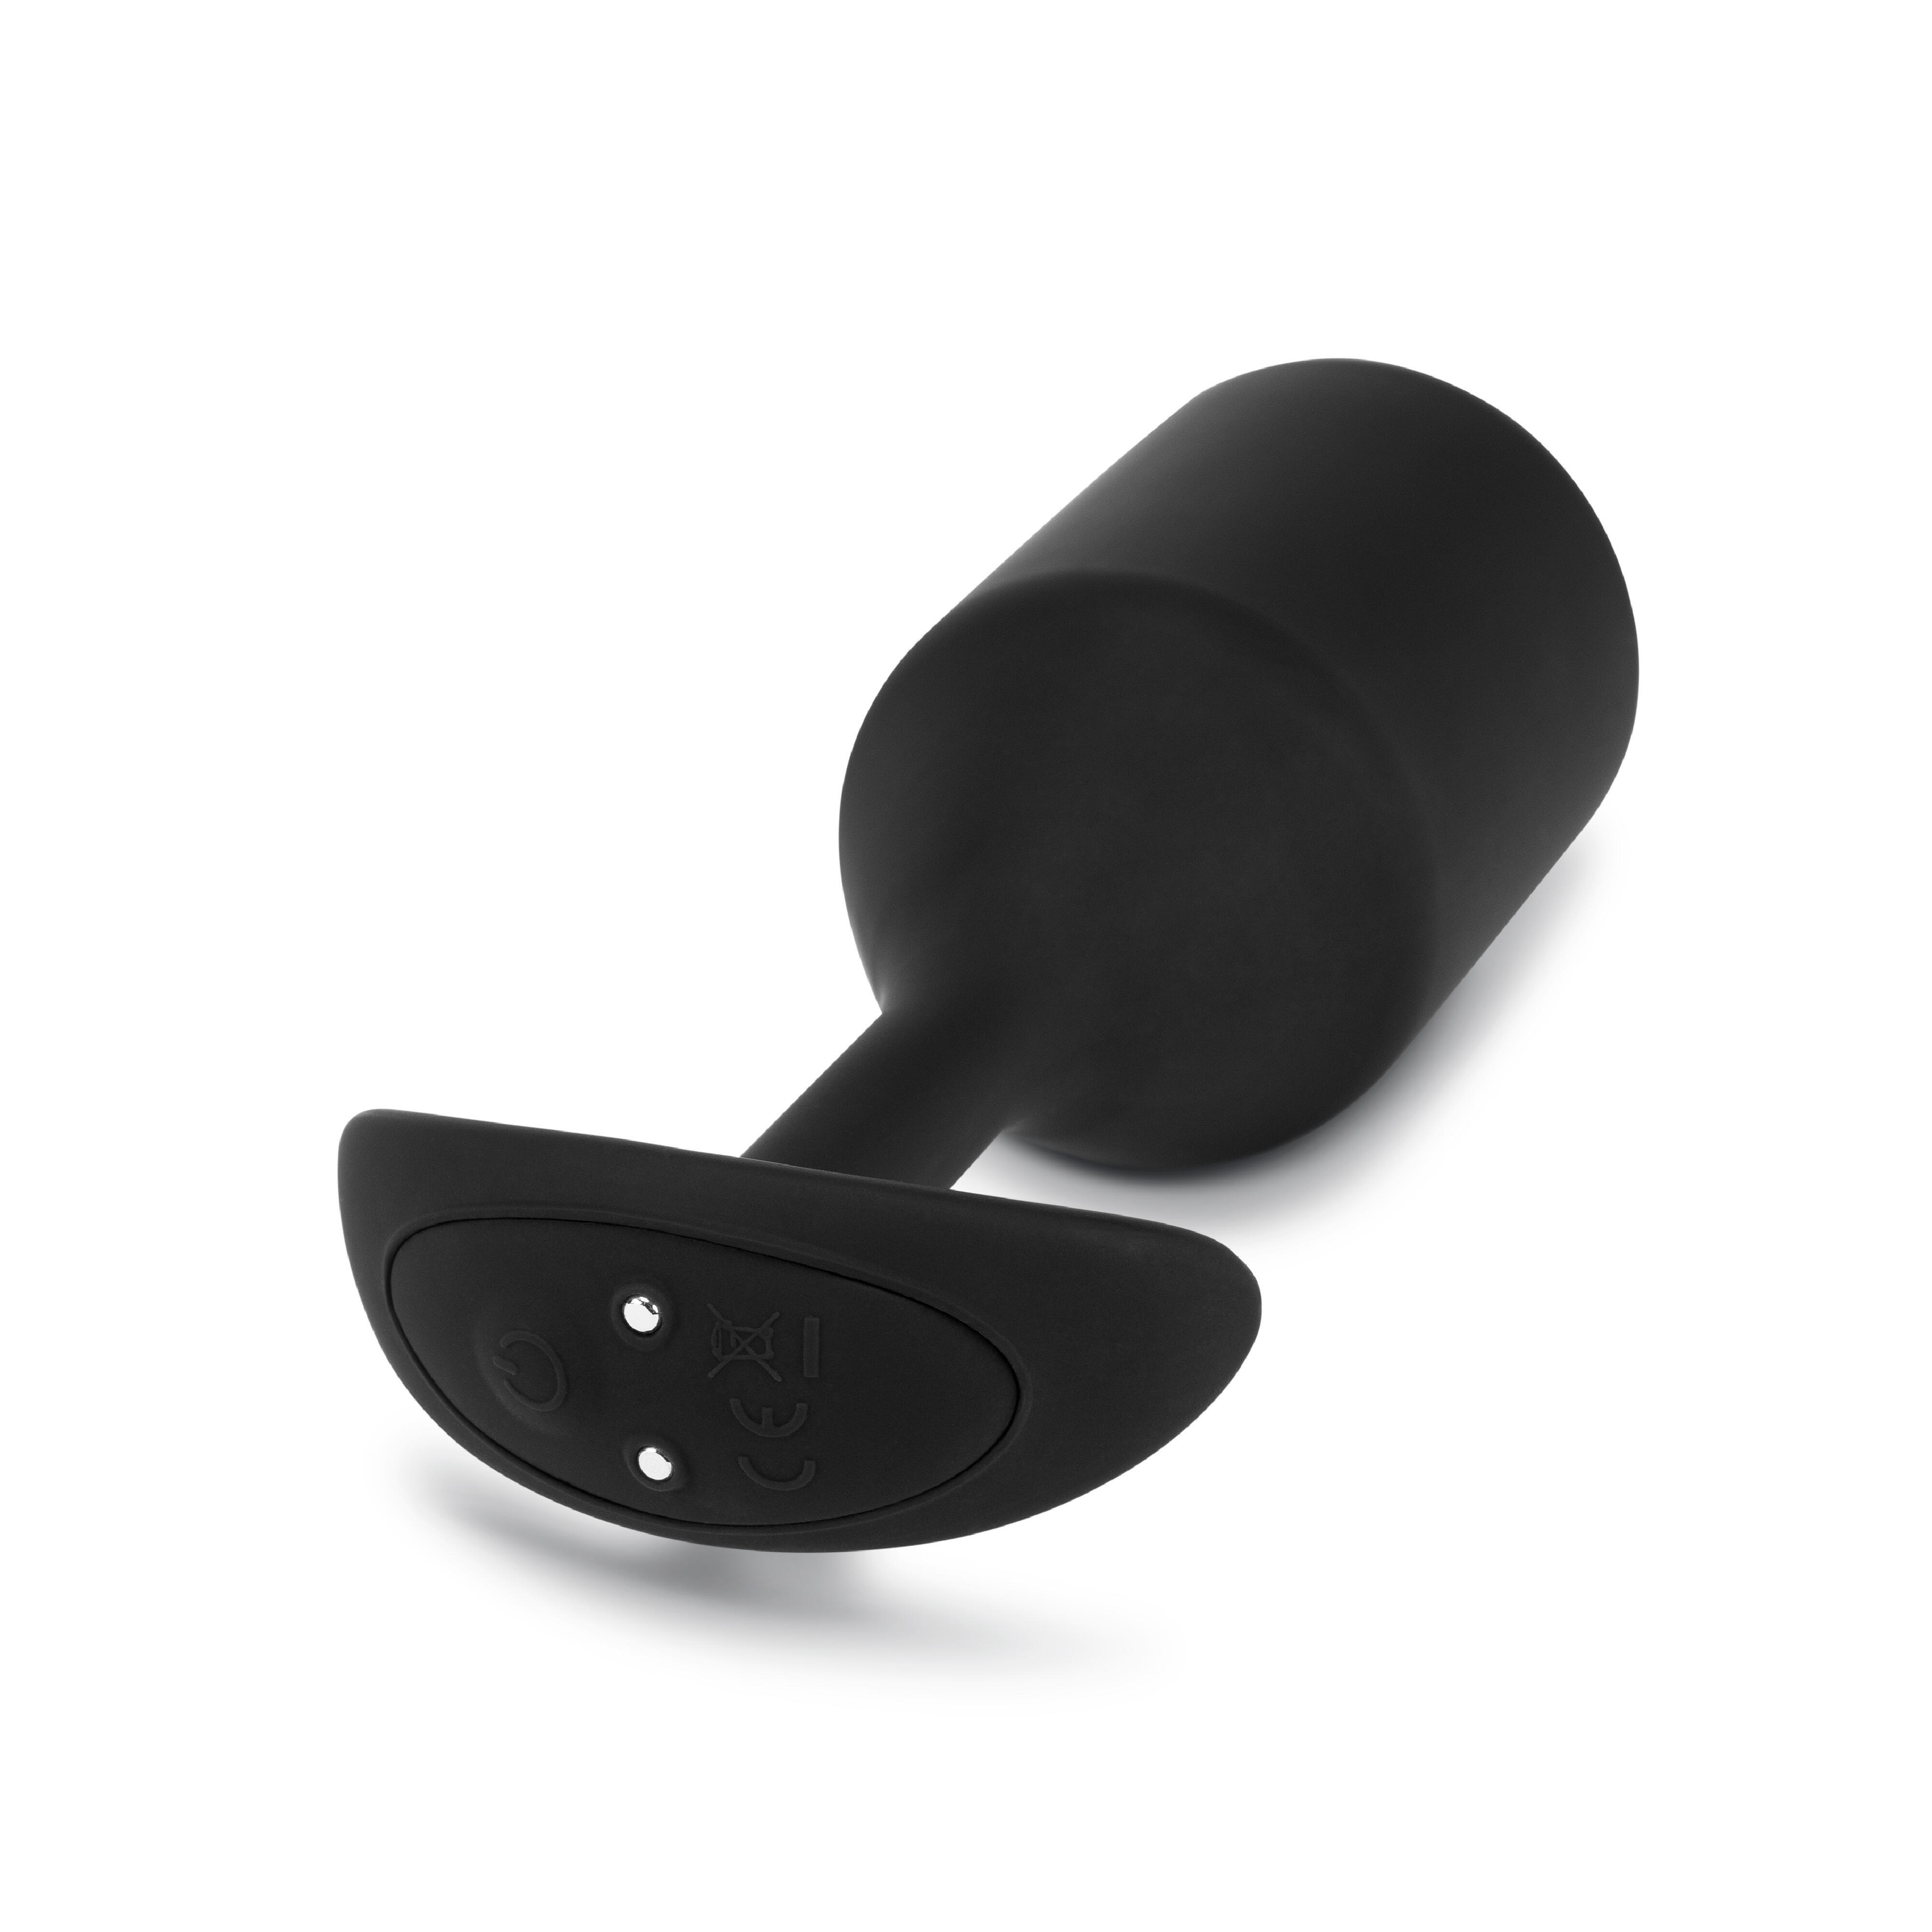 Вибропробка для ношения B-Vibe Vibrating Snug Plug 5, черная